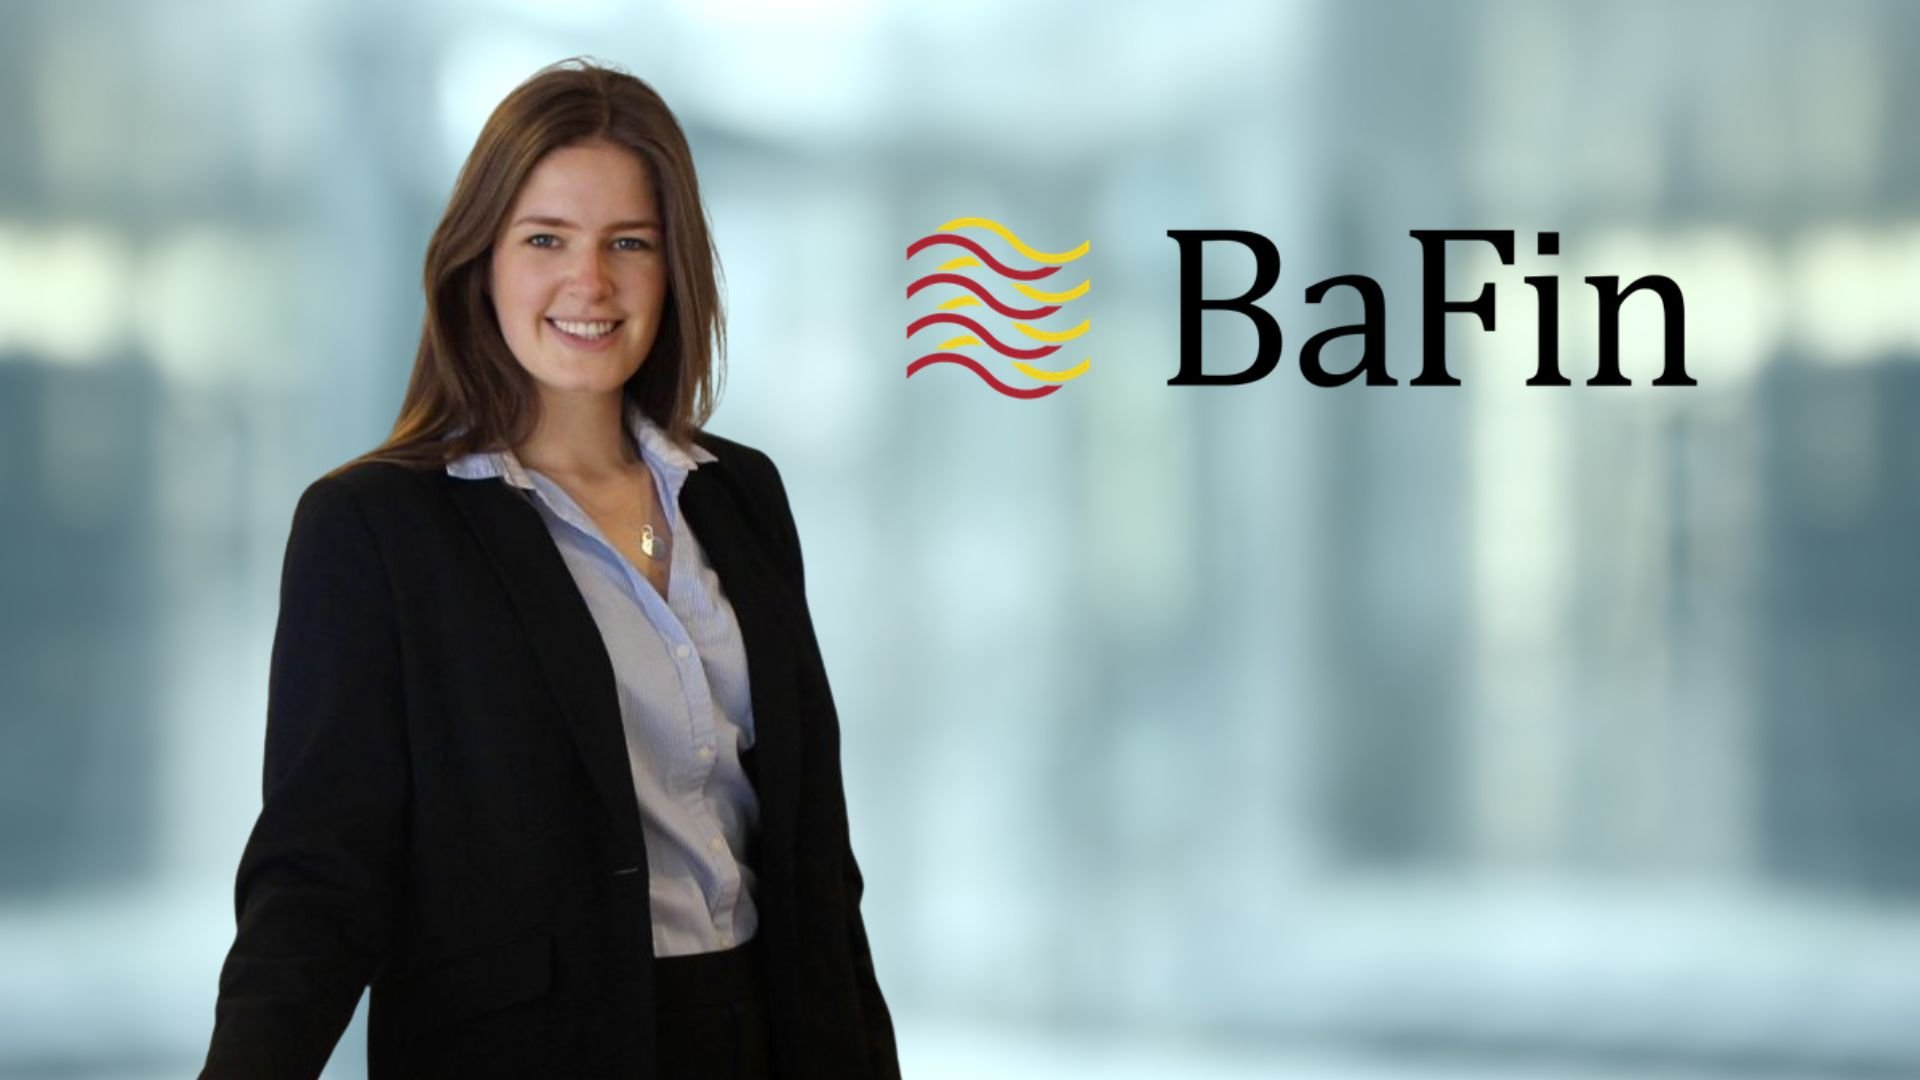 Beim Bitkom verantwortlich für die Studie ist Sarah Palurovic, Referentin Digital Banking & Financial Services, Sarah Palurovic